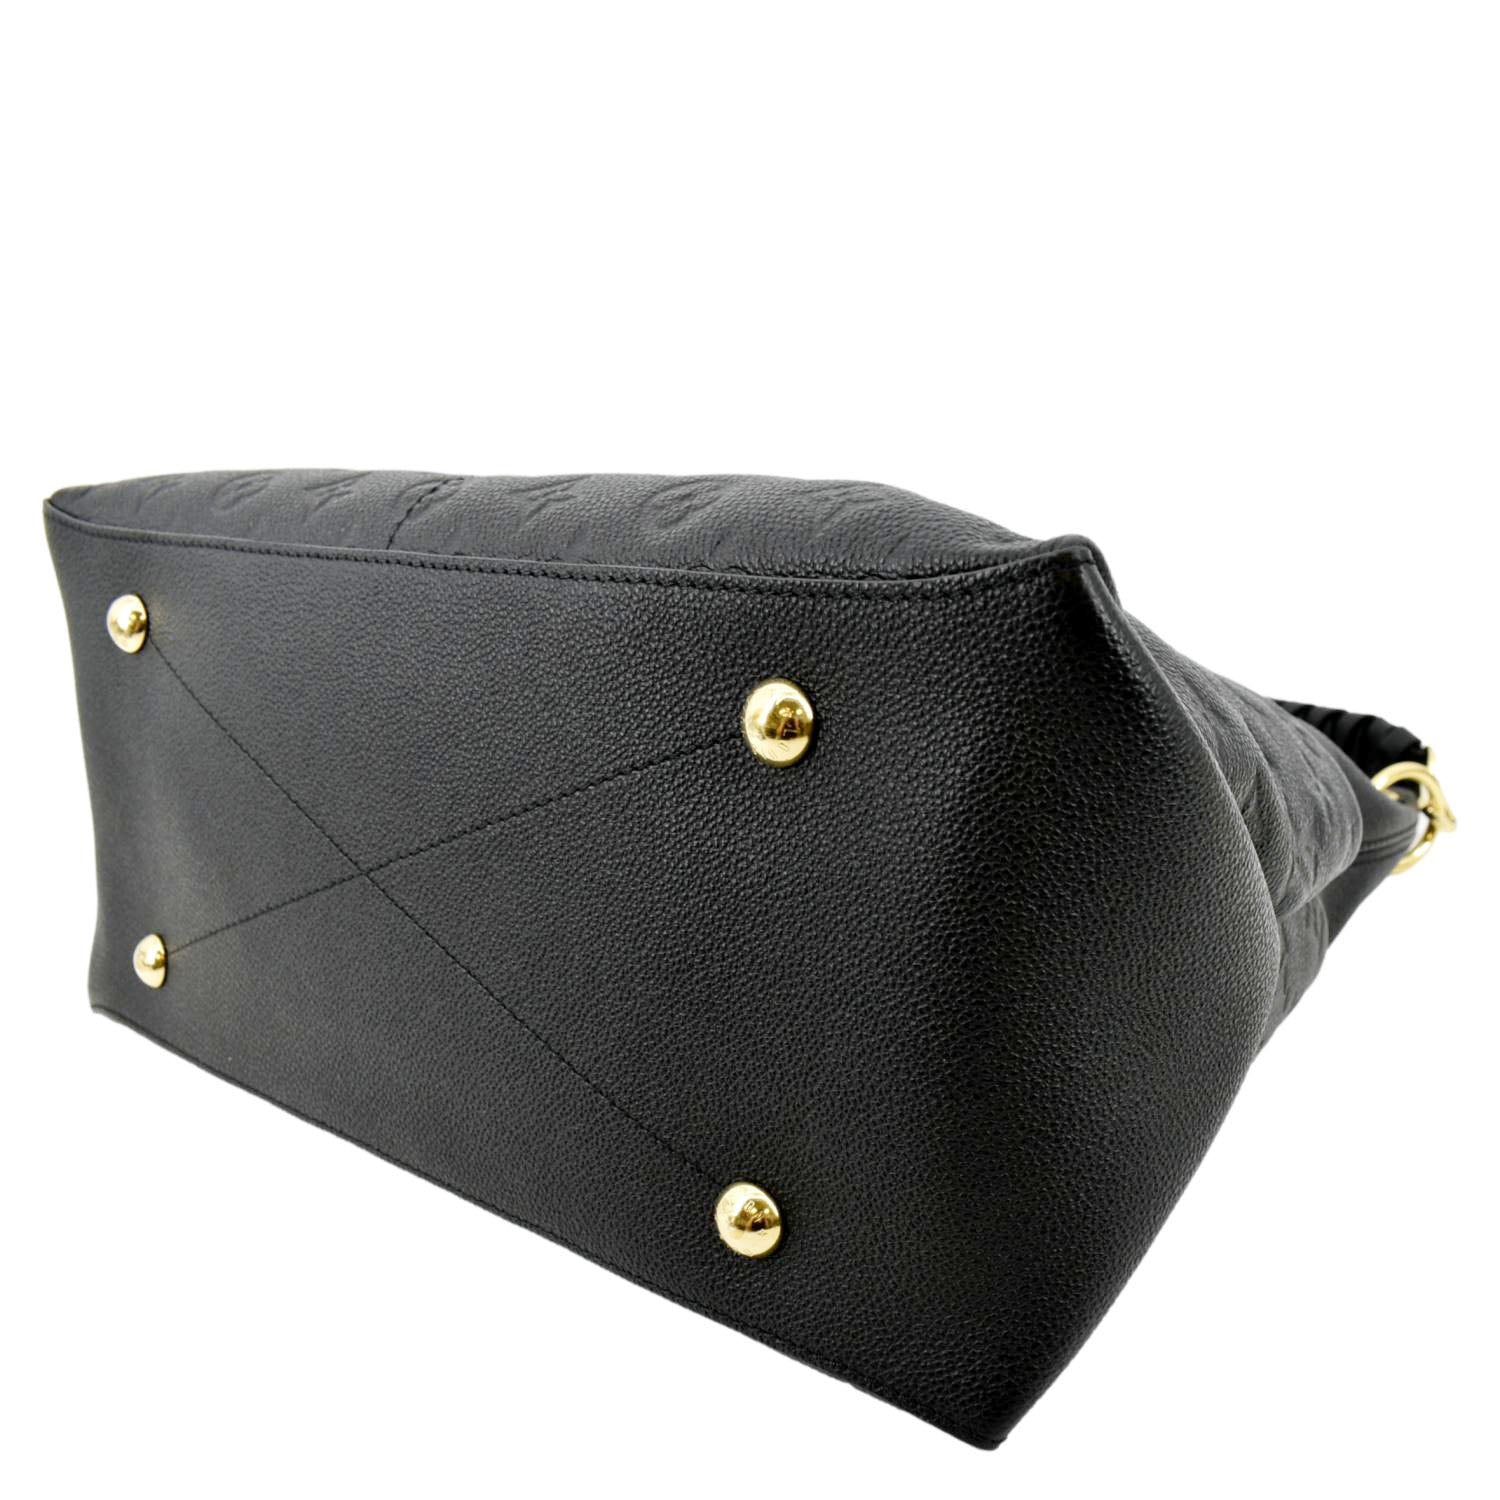 MAIDA HOBO BAG IN BLACK  Bags designer fashion, Bags, Fashion